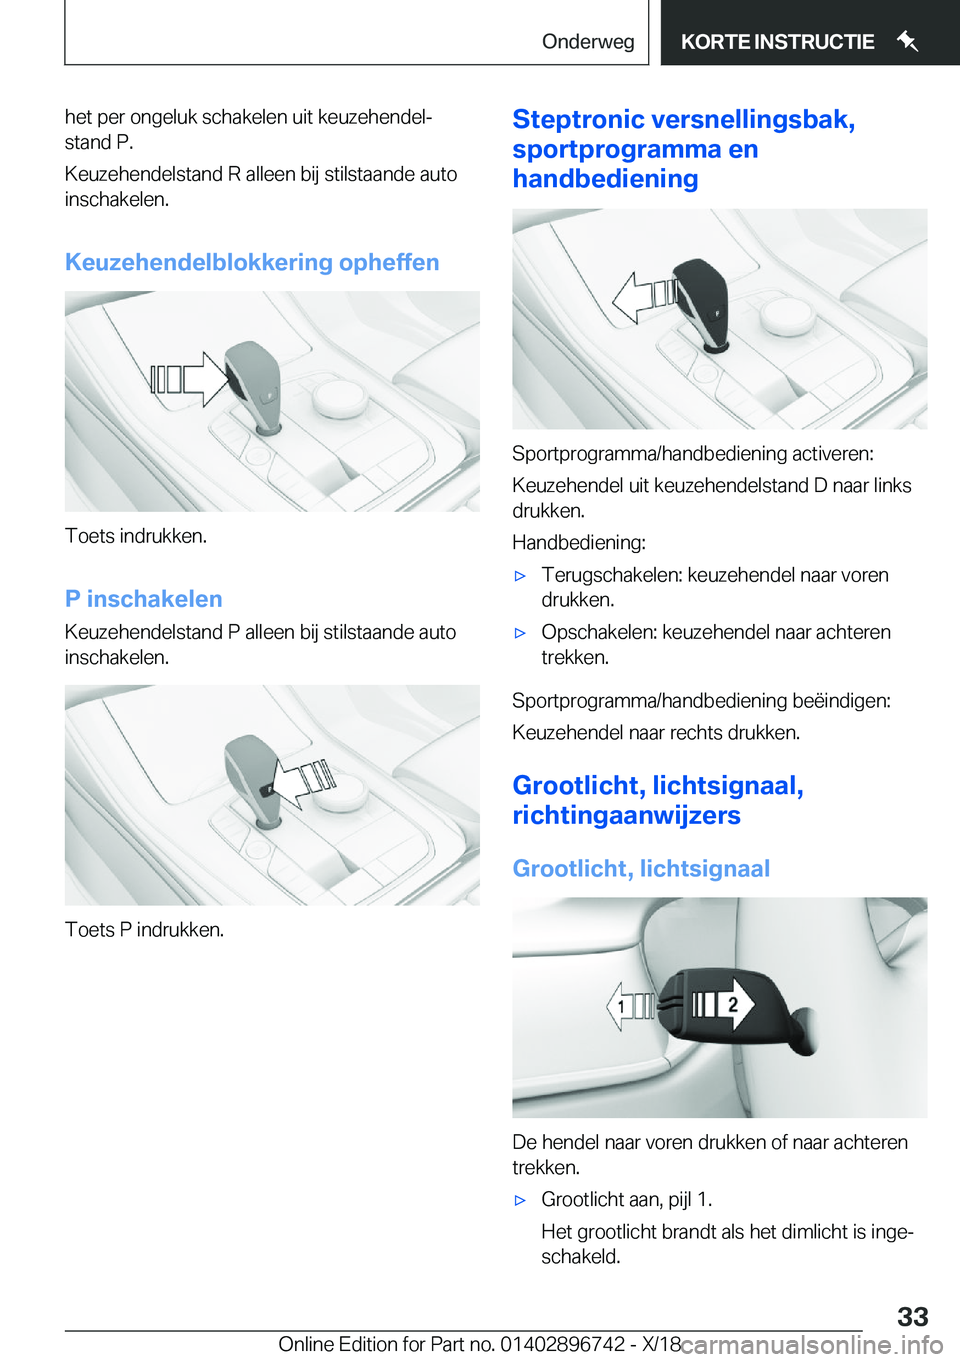 BMW X5 2019  Instructieboekjes (in Dutch) �h�e�t��p�e�r��o�n�g�e�l�u�k��s�c�h�a�k�e�l�e�n��u�i�t��k�e�u�z�e�h�e�n�d�e�lj�s�t�a�n�d��P�.
�K�e�u�z�e�h�e�n�d�e�l�s�t�a�n�d��R��a�l�l�e�e�n��b�i�j��s�t�i�l�s�t�a�a�n�d�e��a�u�t�o �i�n�s